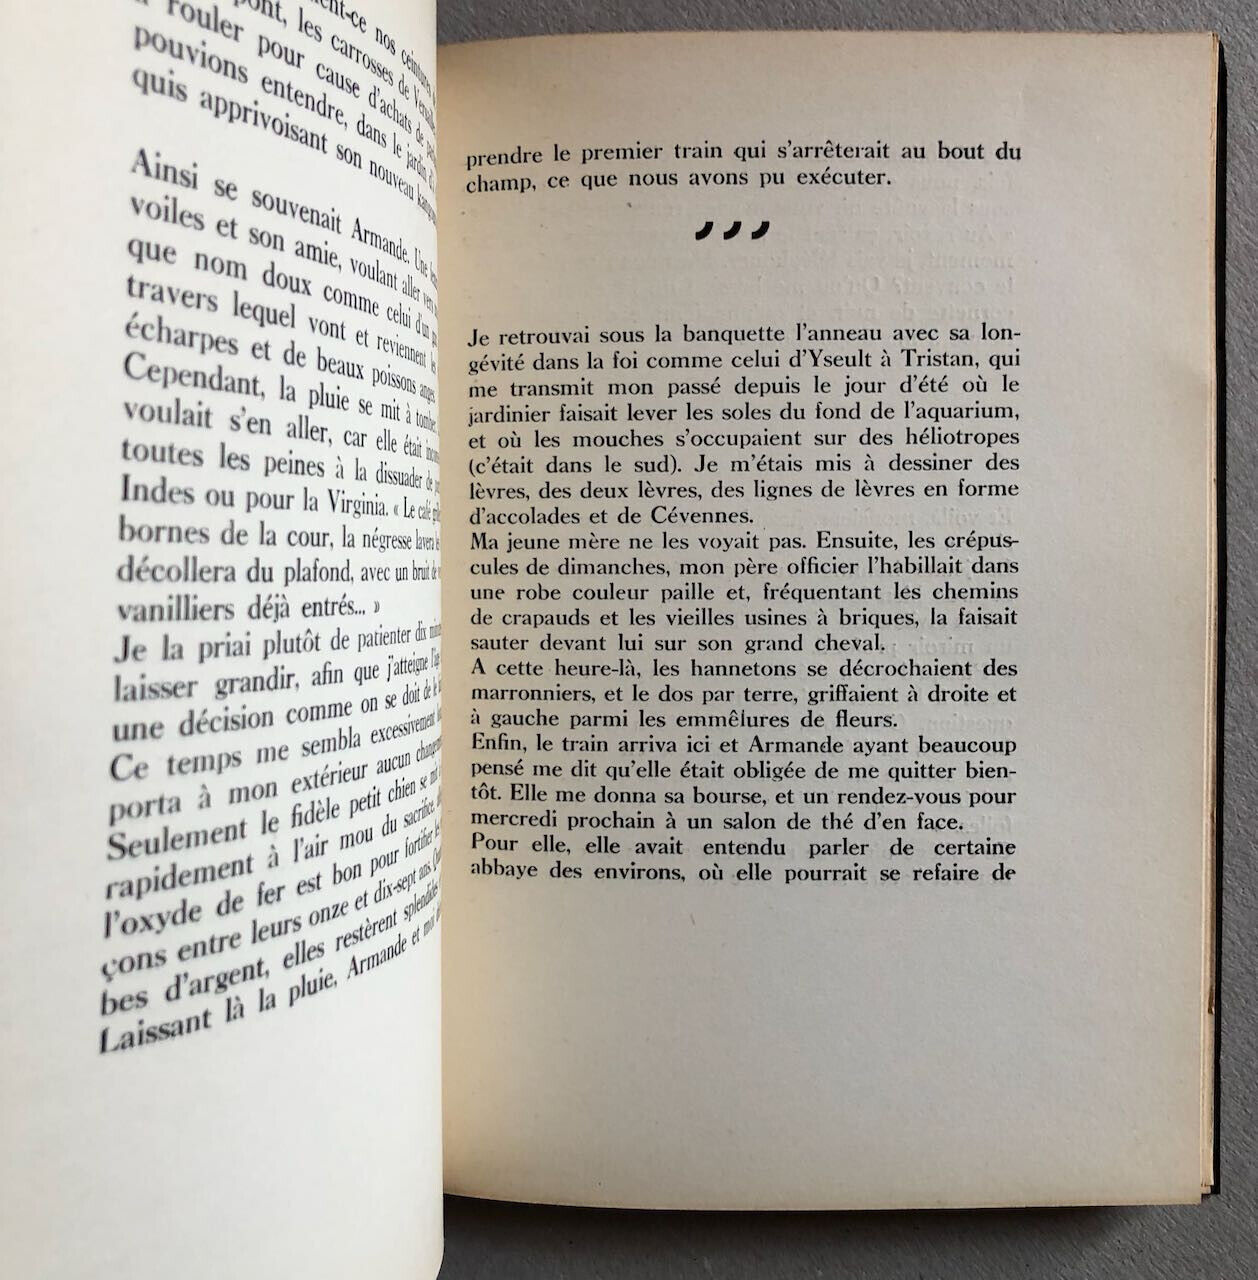 Valentine Penrose — Le nouveau Candide — Front. Paalen — éo n°/200 — GLM — 1936.